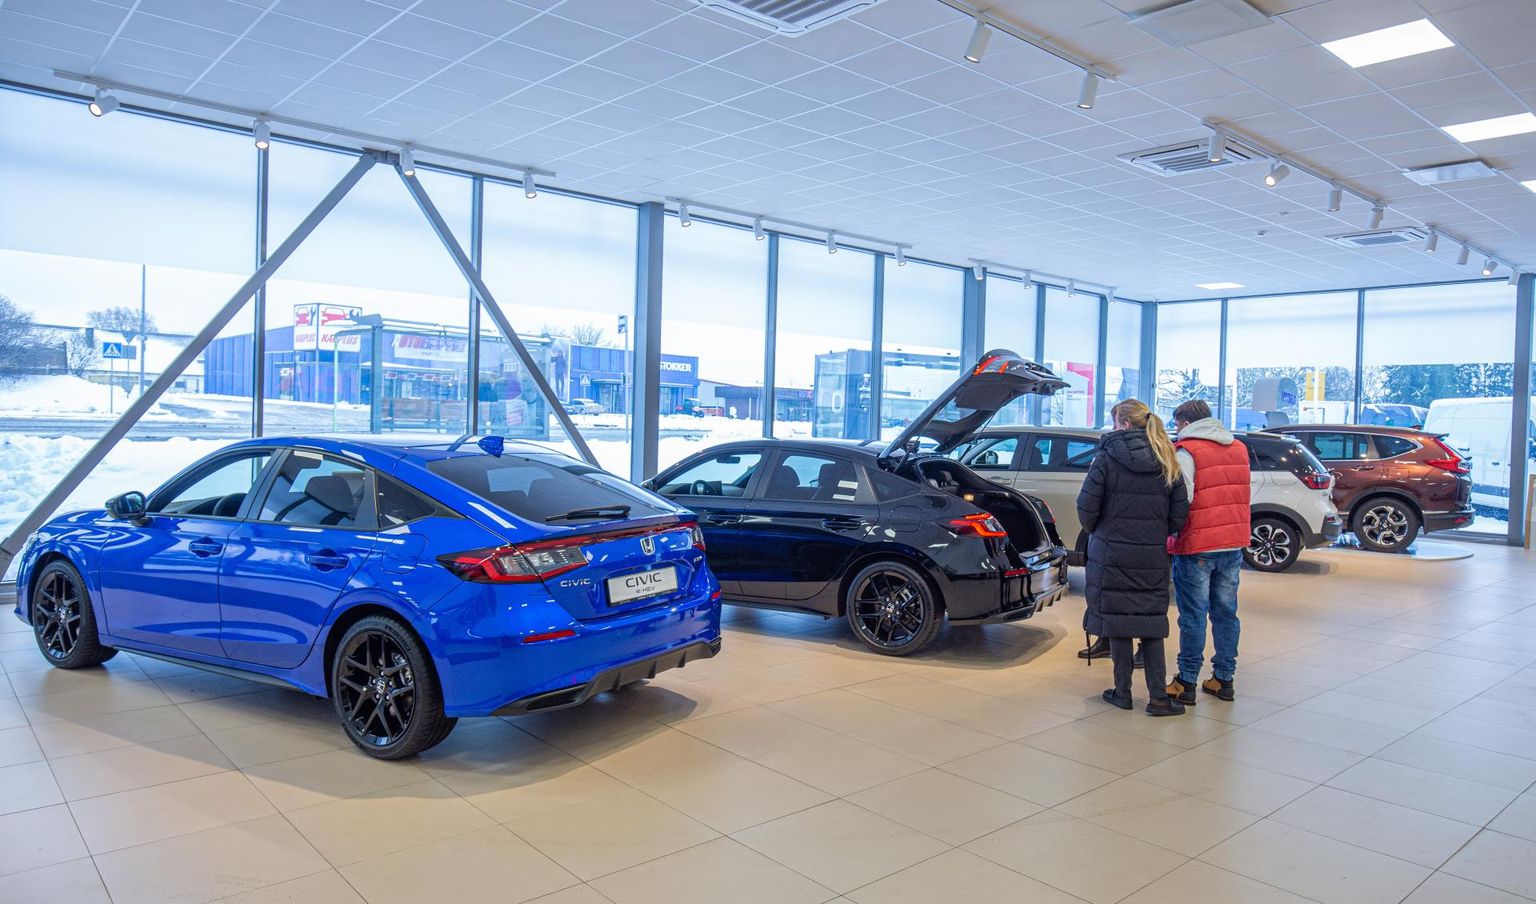 Möödunud aastal kasvatas müüki kolm Viljandi autoesindust ja üks neist oli LX Motors, kuhu jõudis kohale pikalt oodatud uute mudelite valik.